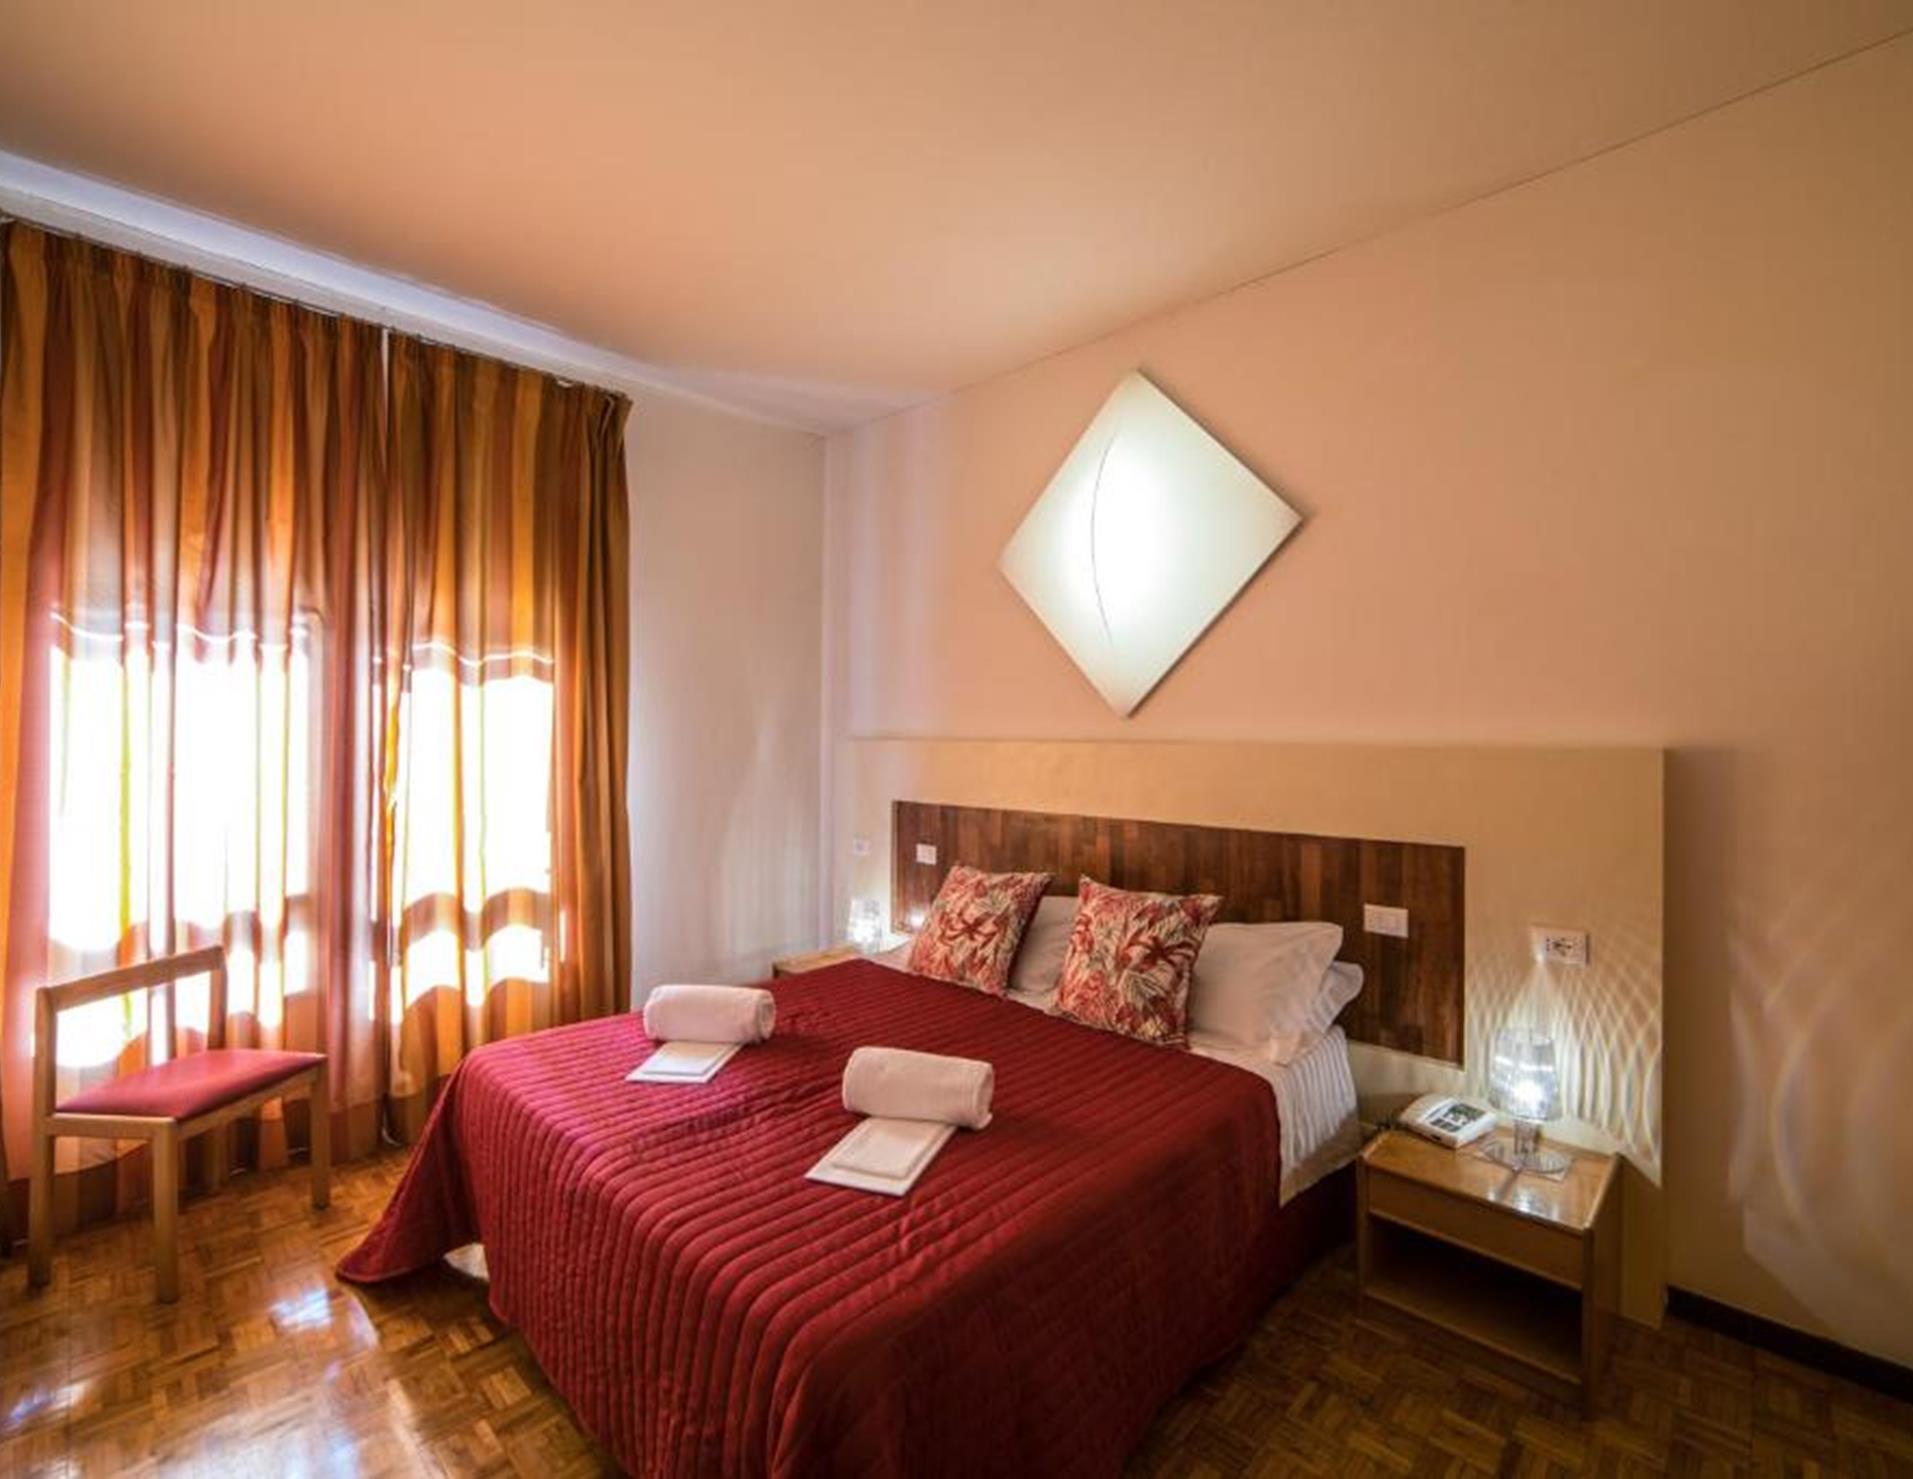 Hotel La Vecchia Cartiera - Room 6